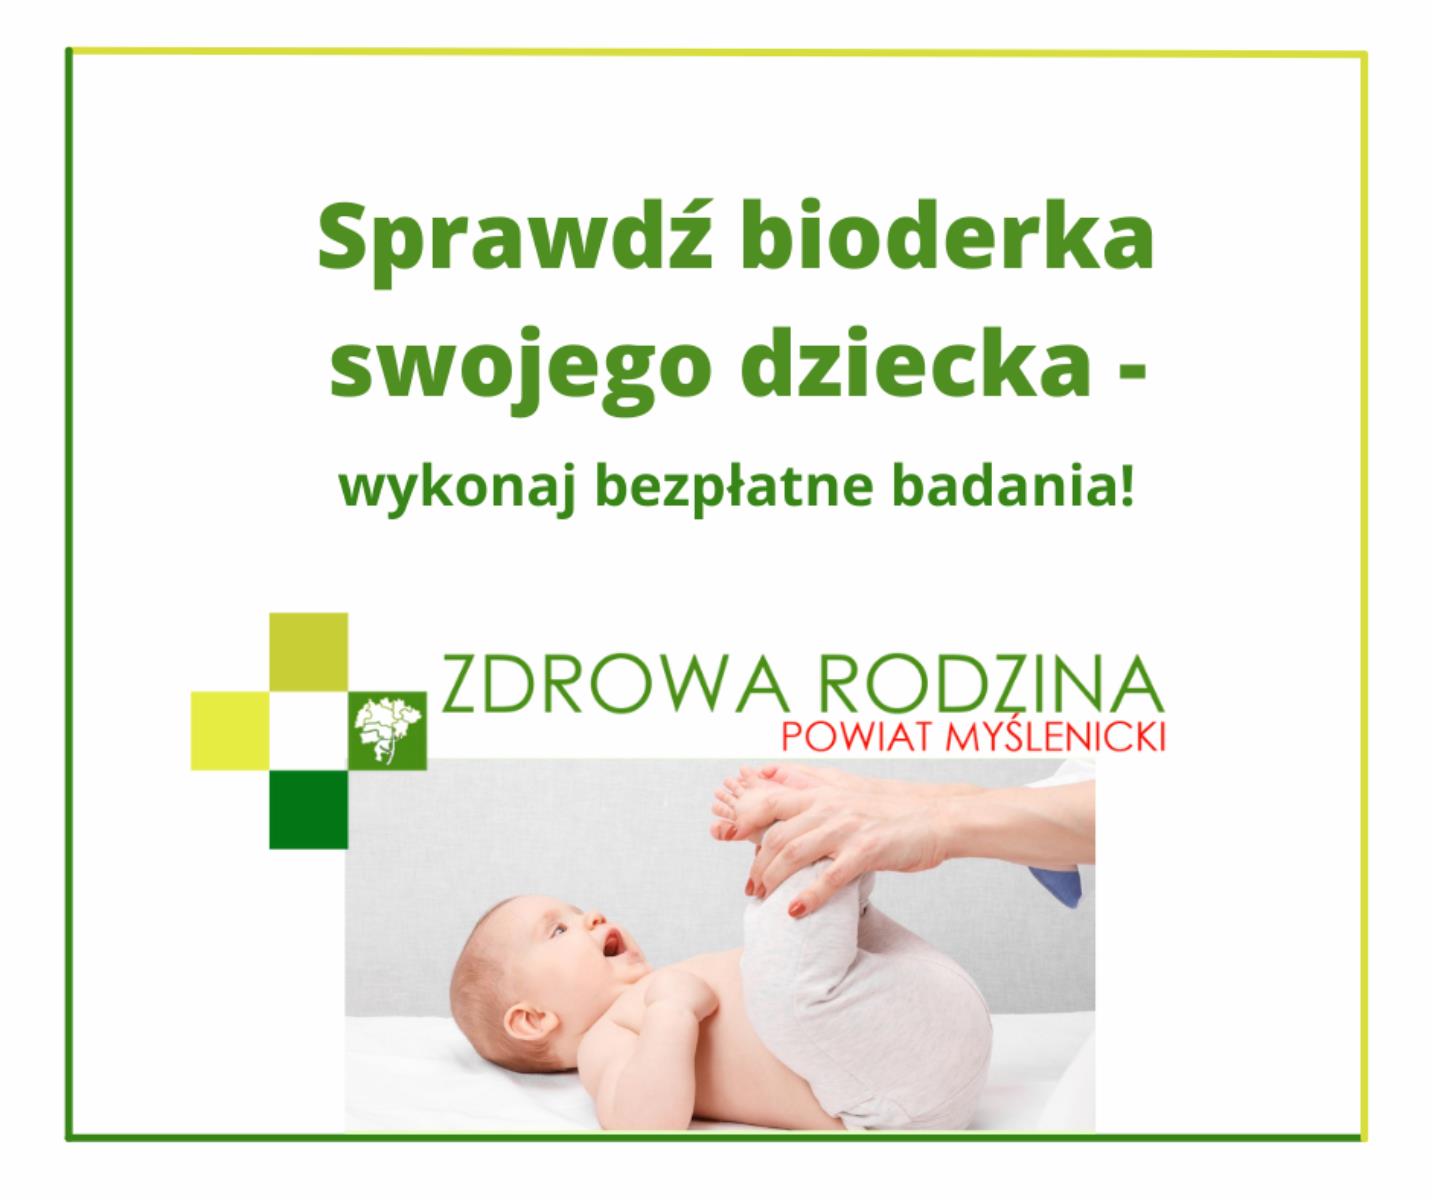 Bezpłatne badania stawów biodrowych u niemowląt!